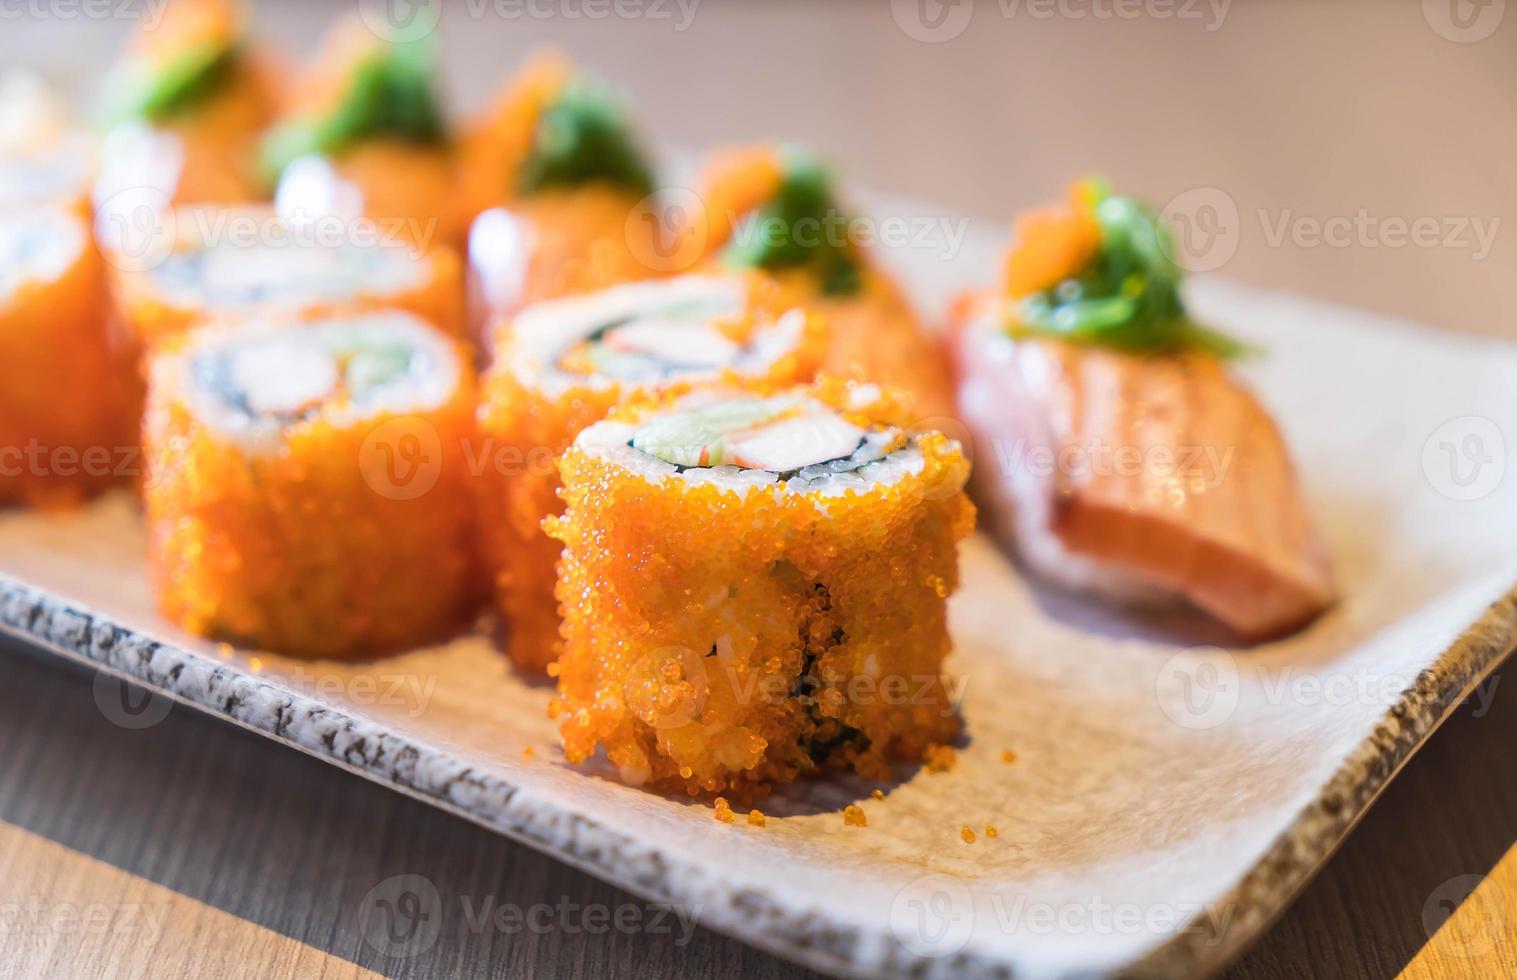 sushi di salmone e maki di salmone - cibo giapponese foto